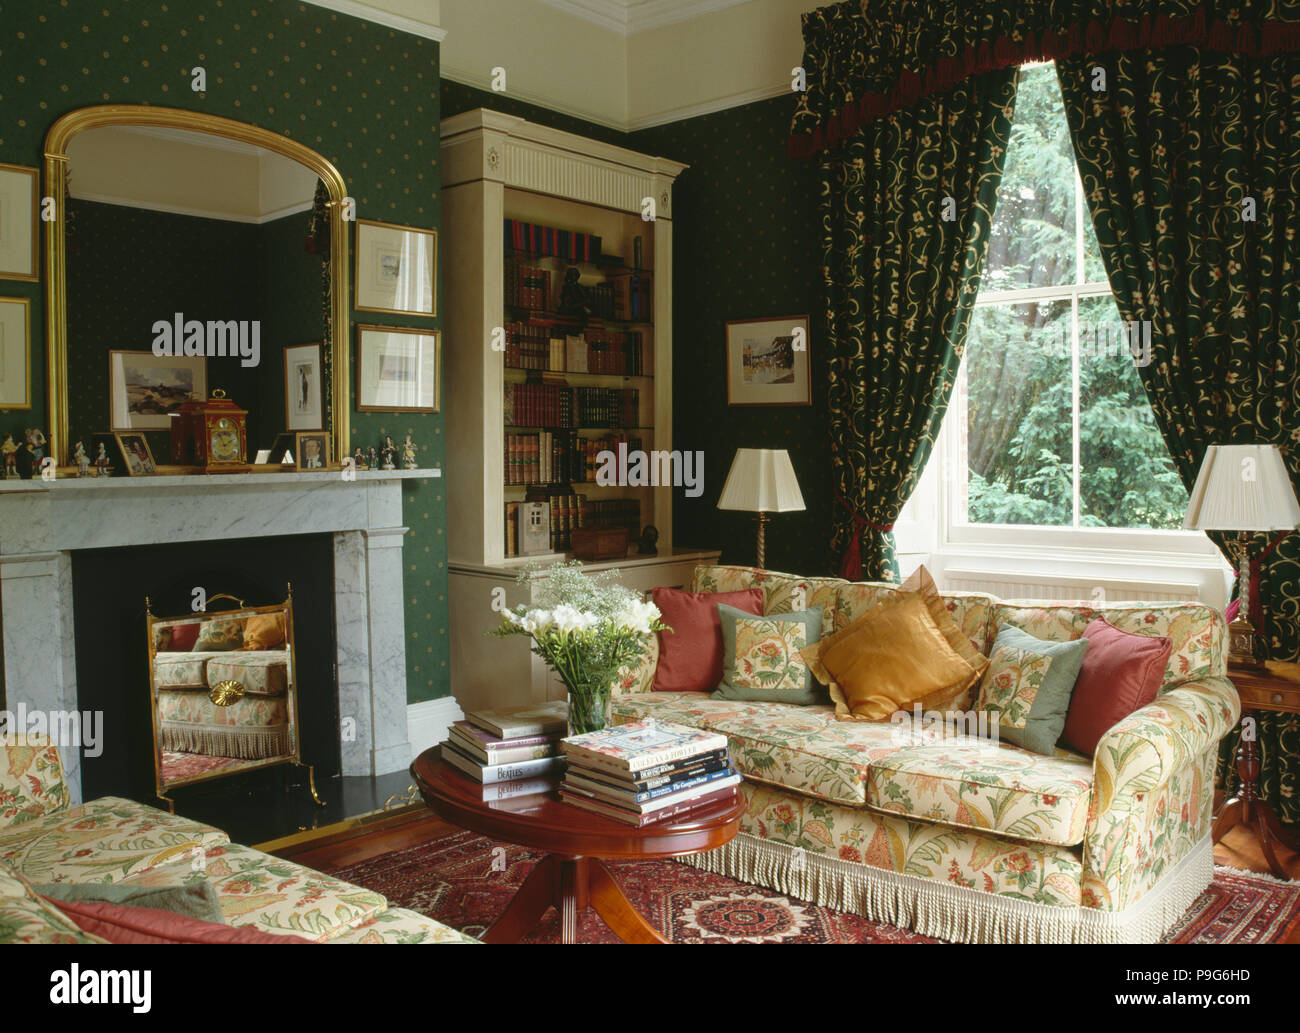 Miroir doré au-dessus de la cheminée de marbre dans années 90 salon papier peint vert et rideaux à motifs floral & sofas Banque D'Images